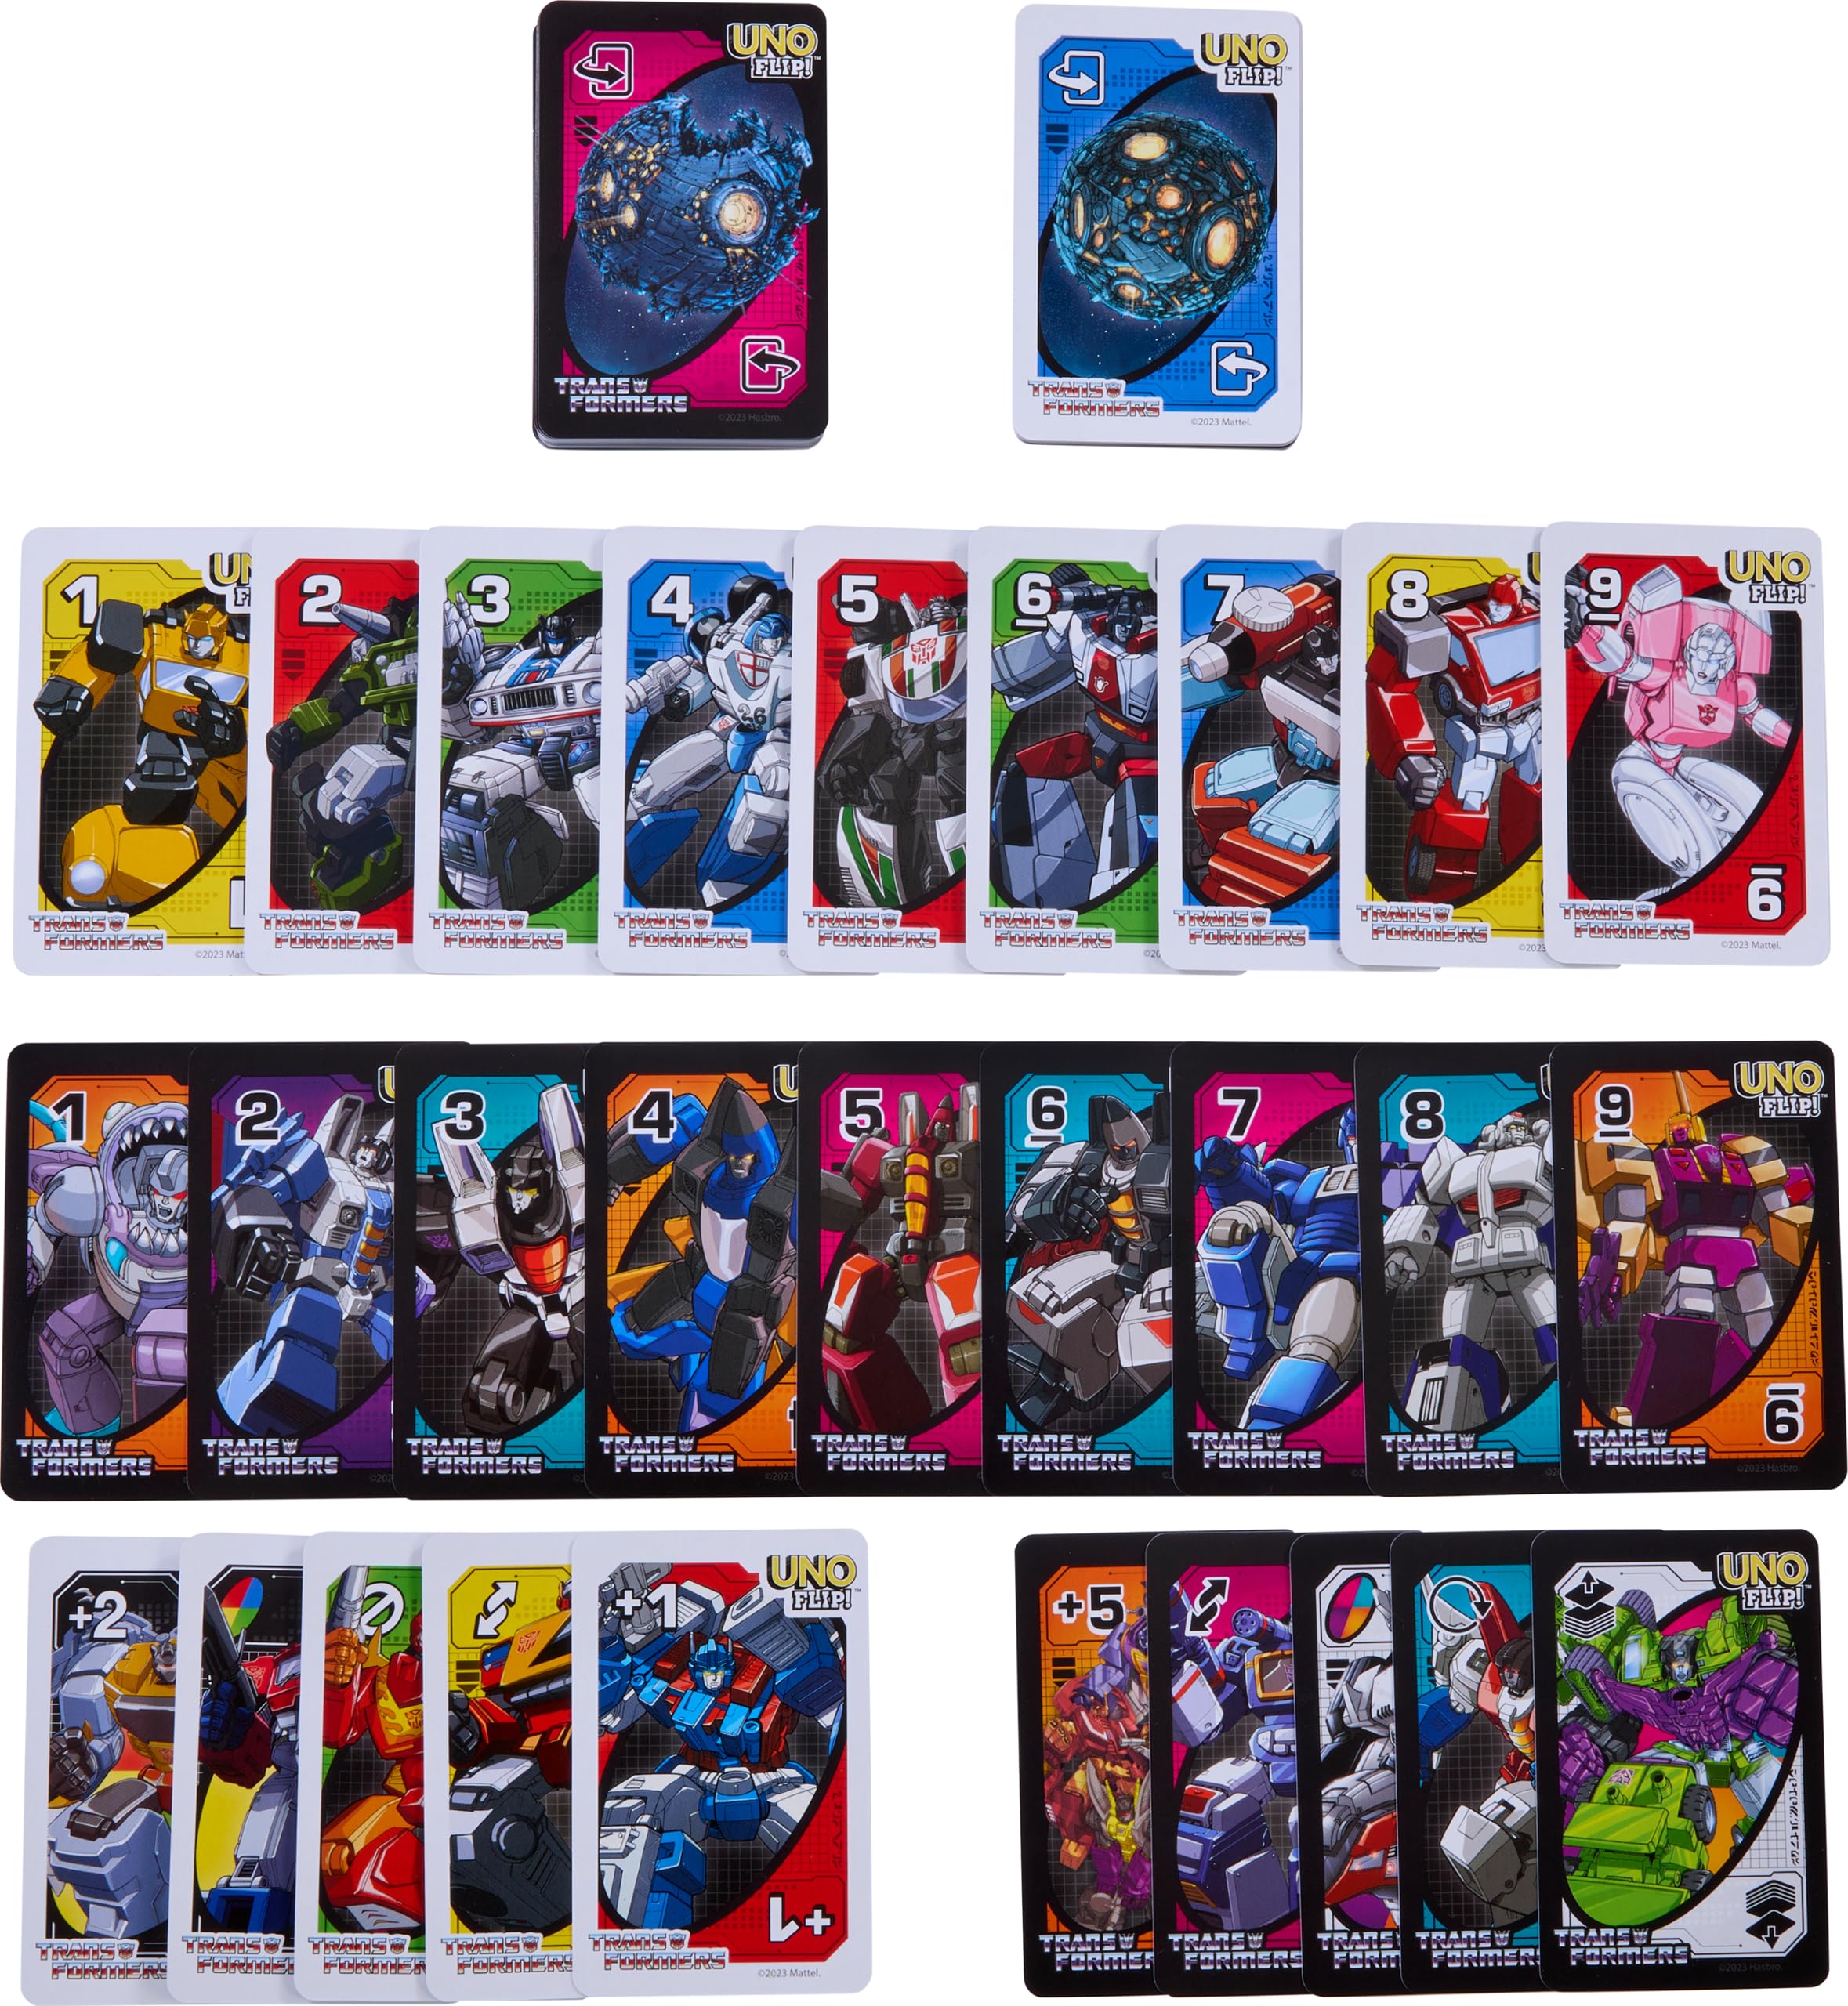 Mattel Games UNO Flip Transformers